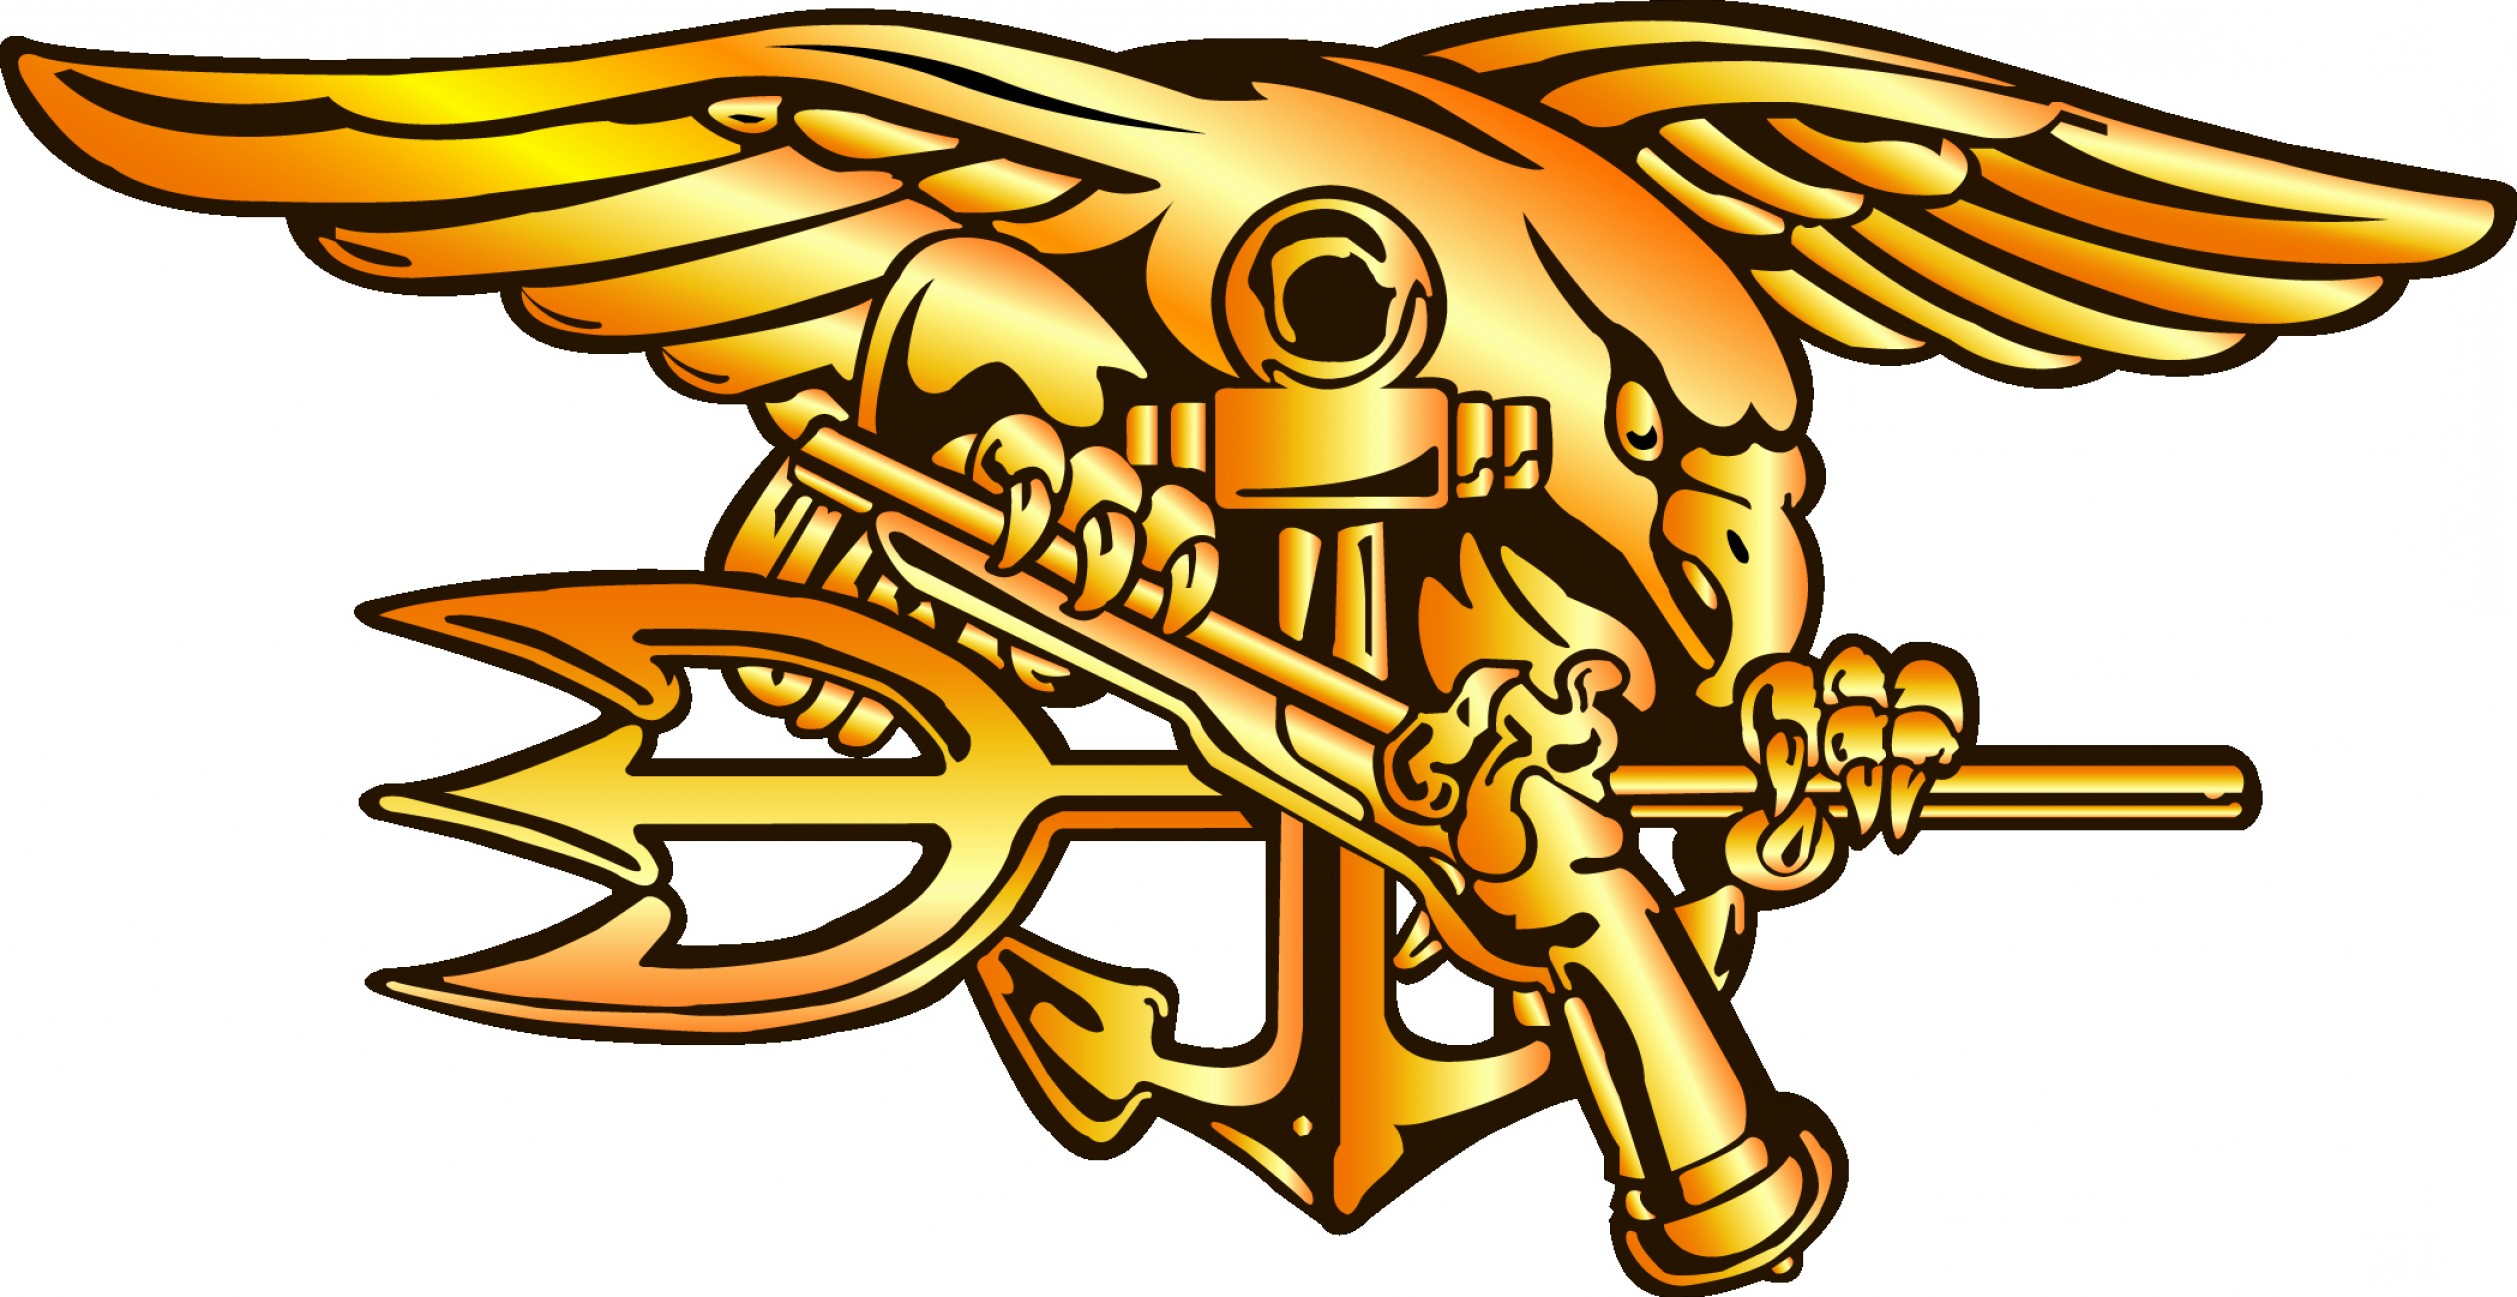 United States Navy Seals Logo